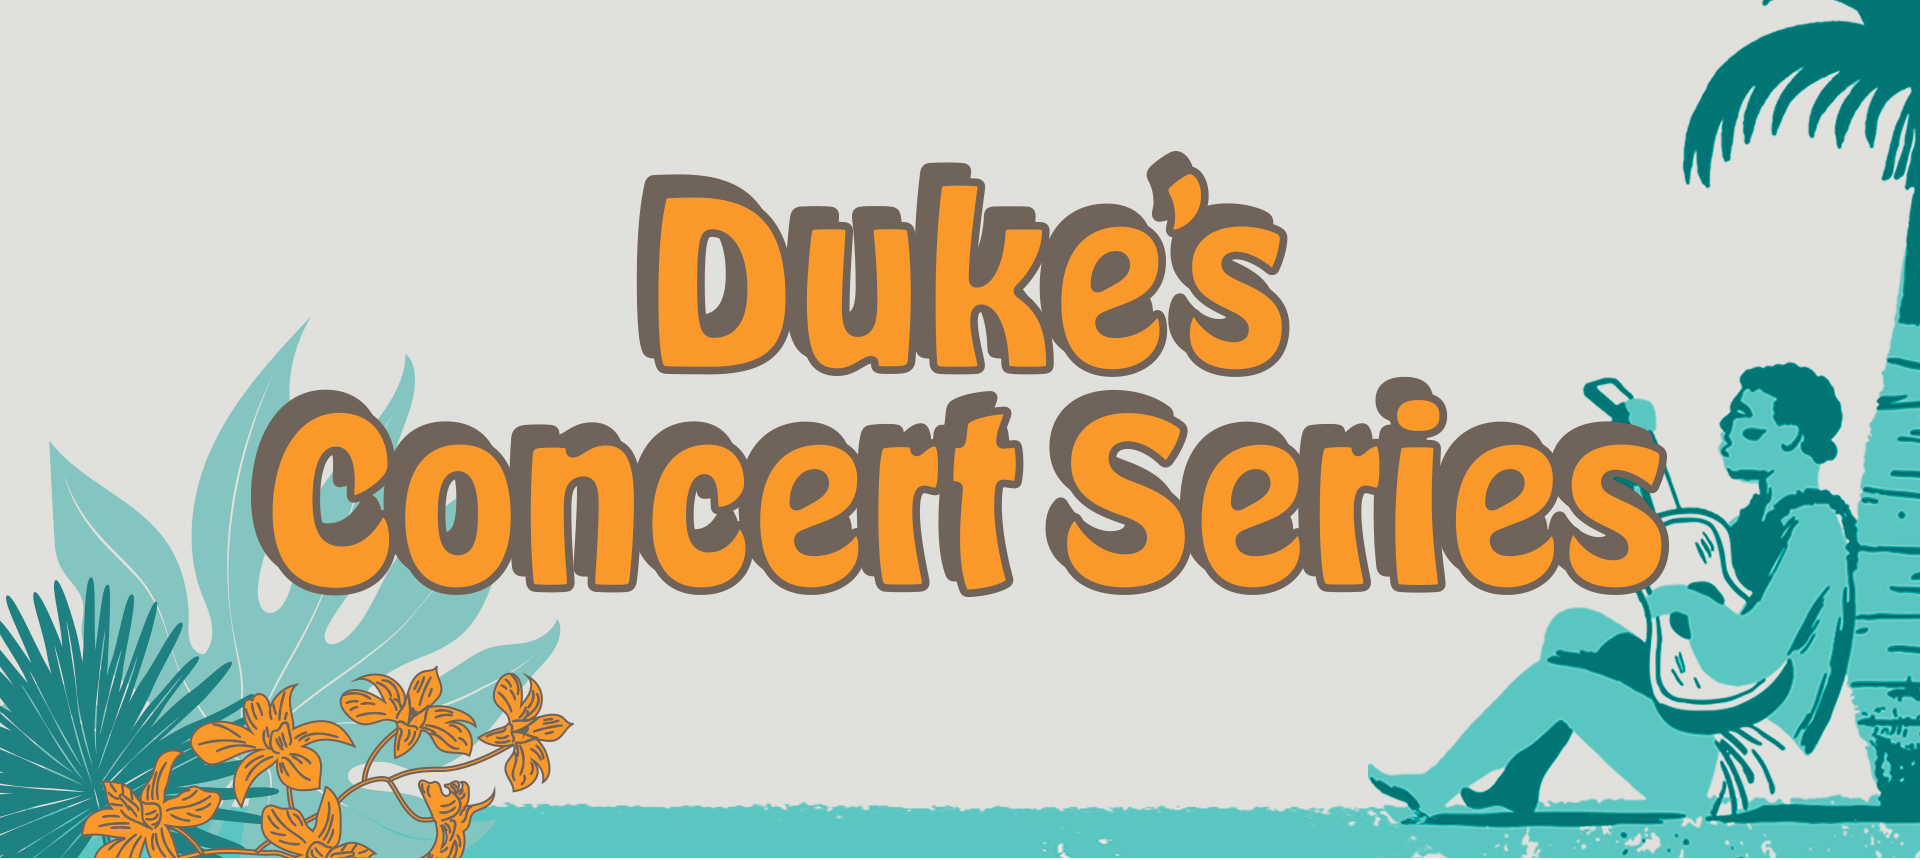 Duke's Concert Series